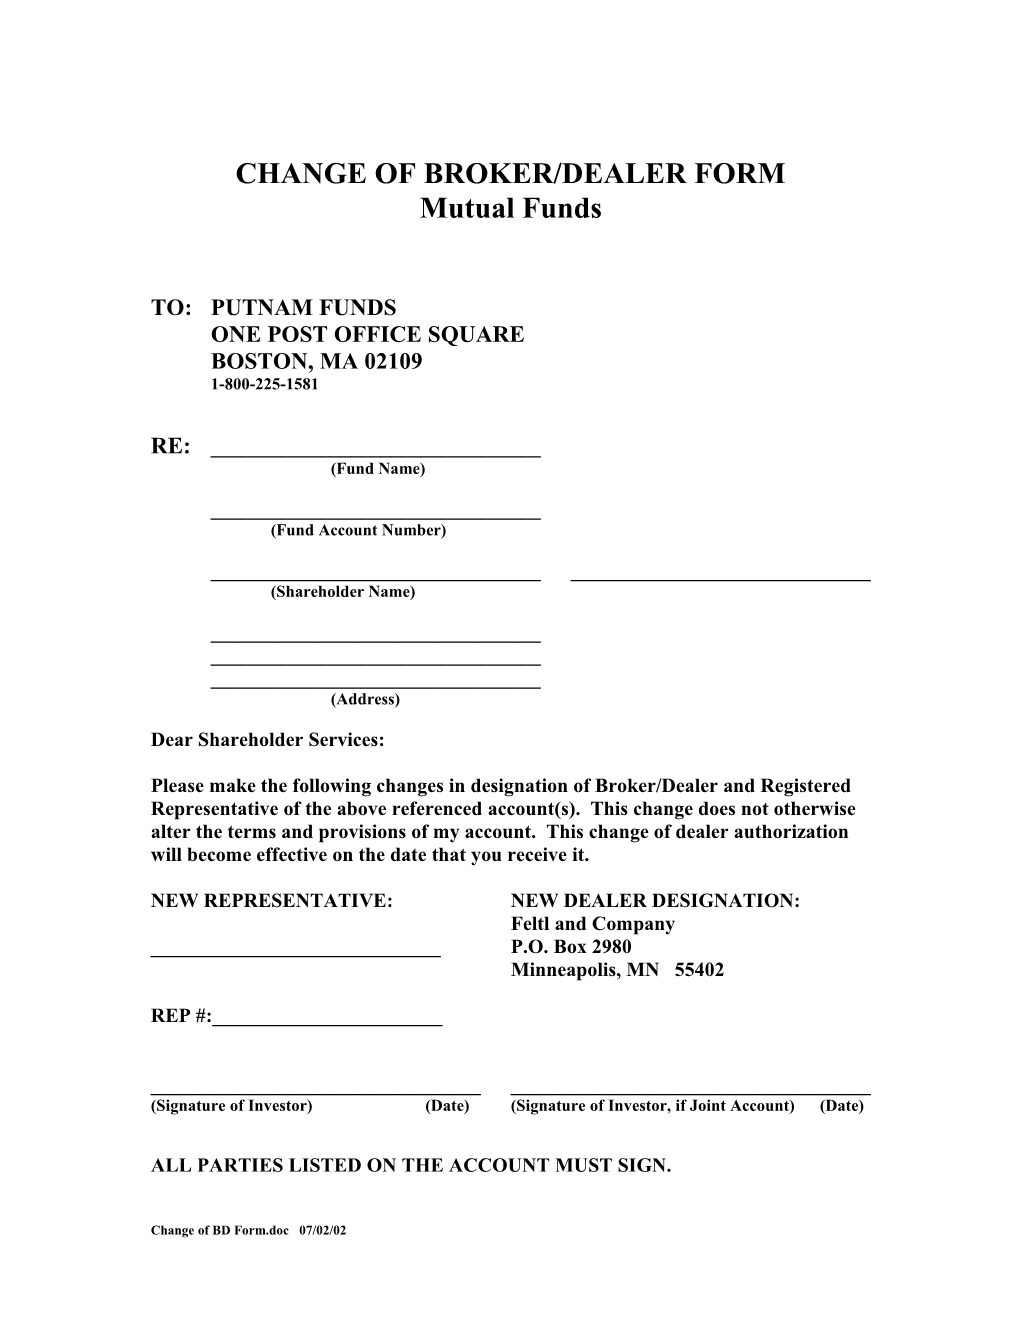 Change of Broker/Dealer Form